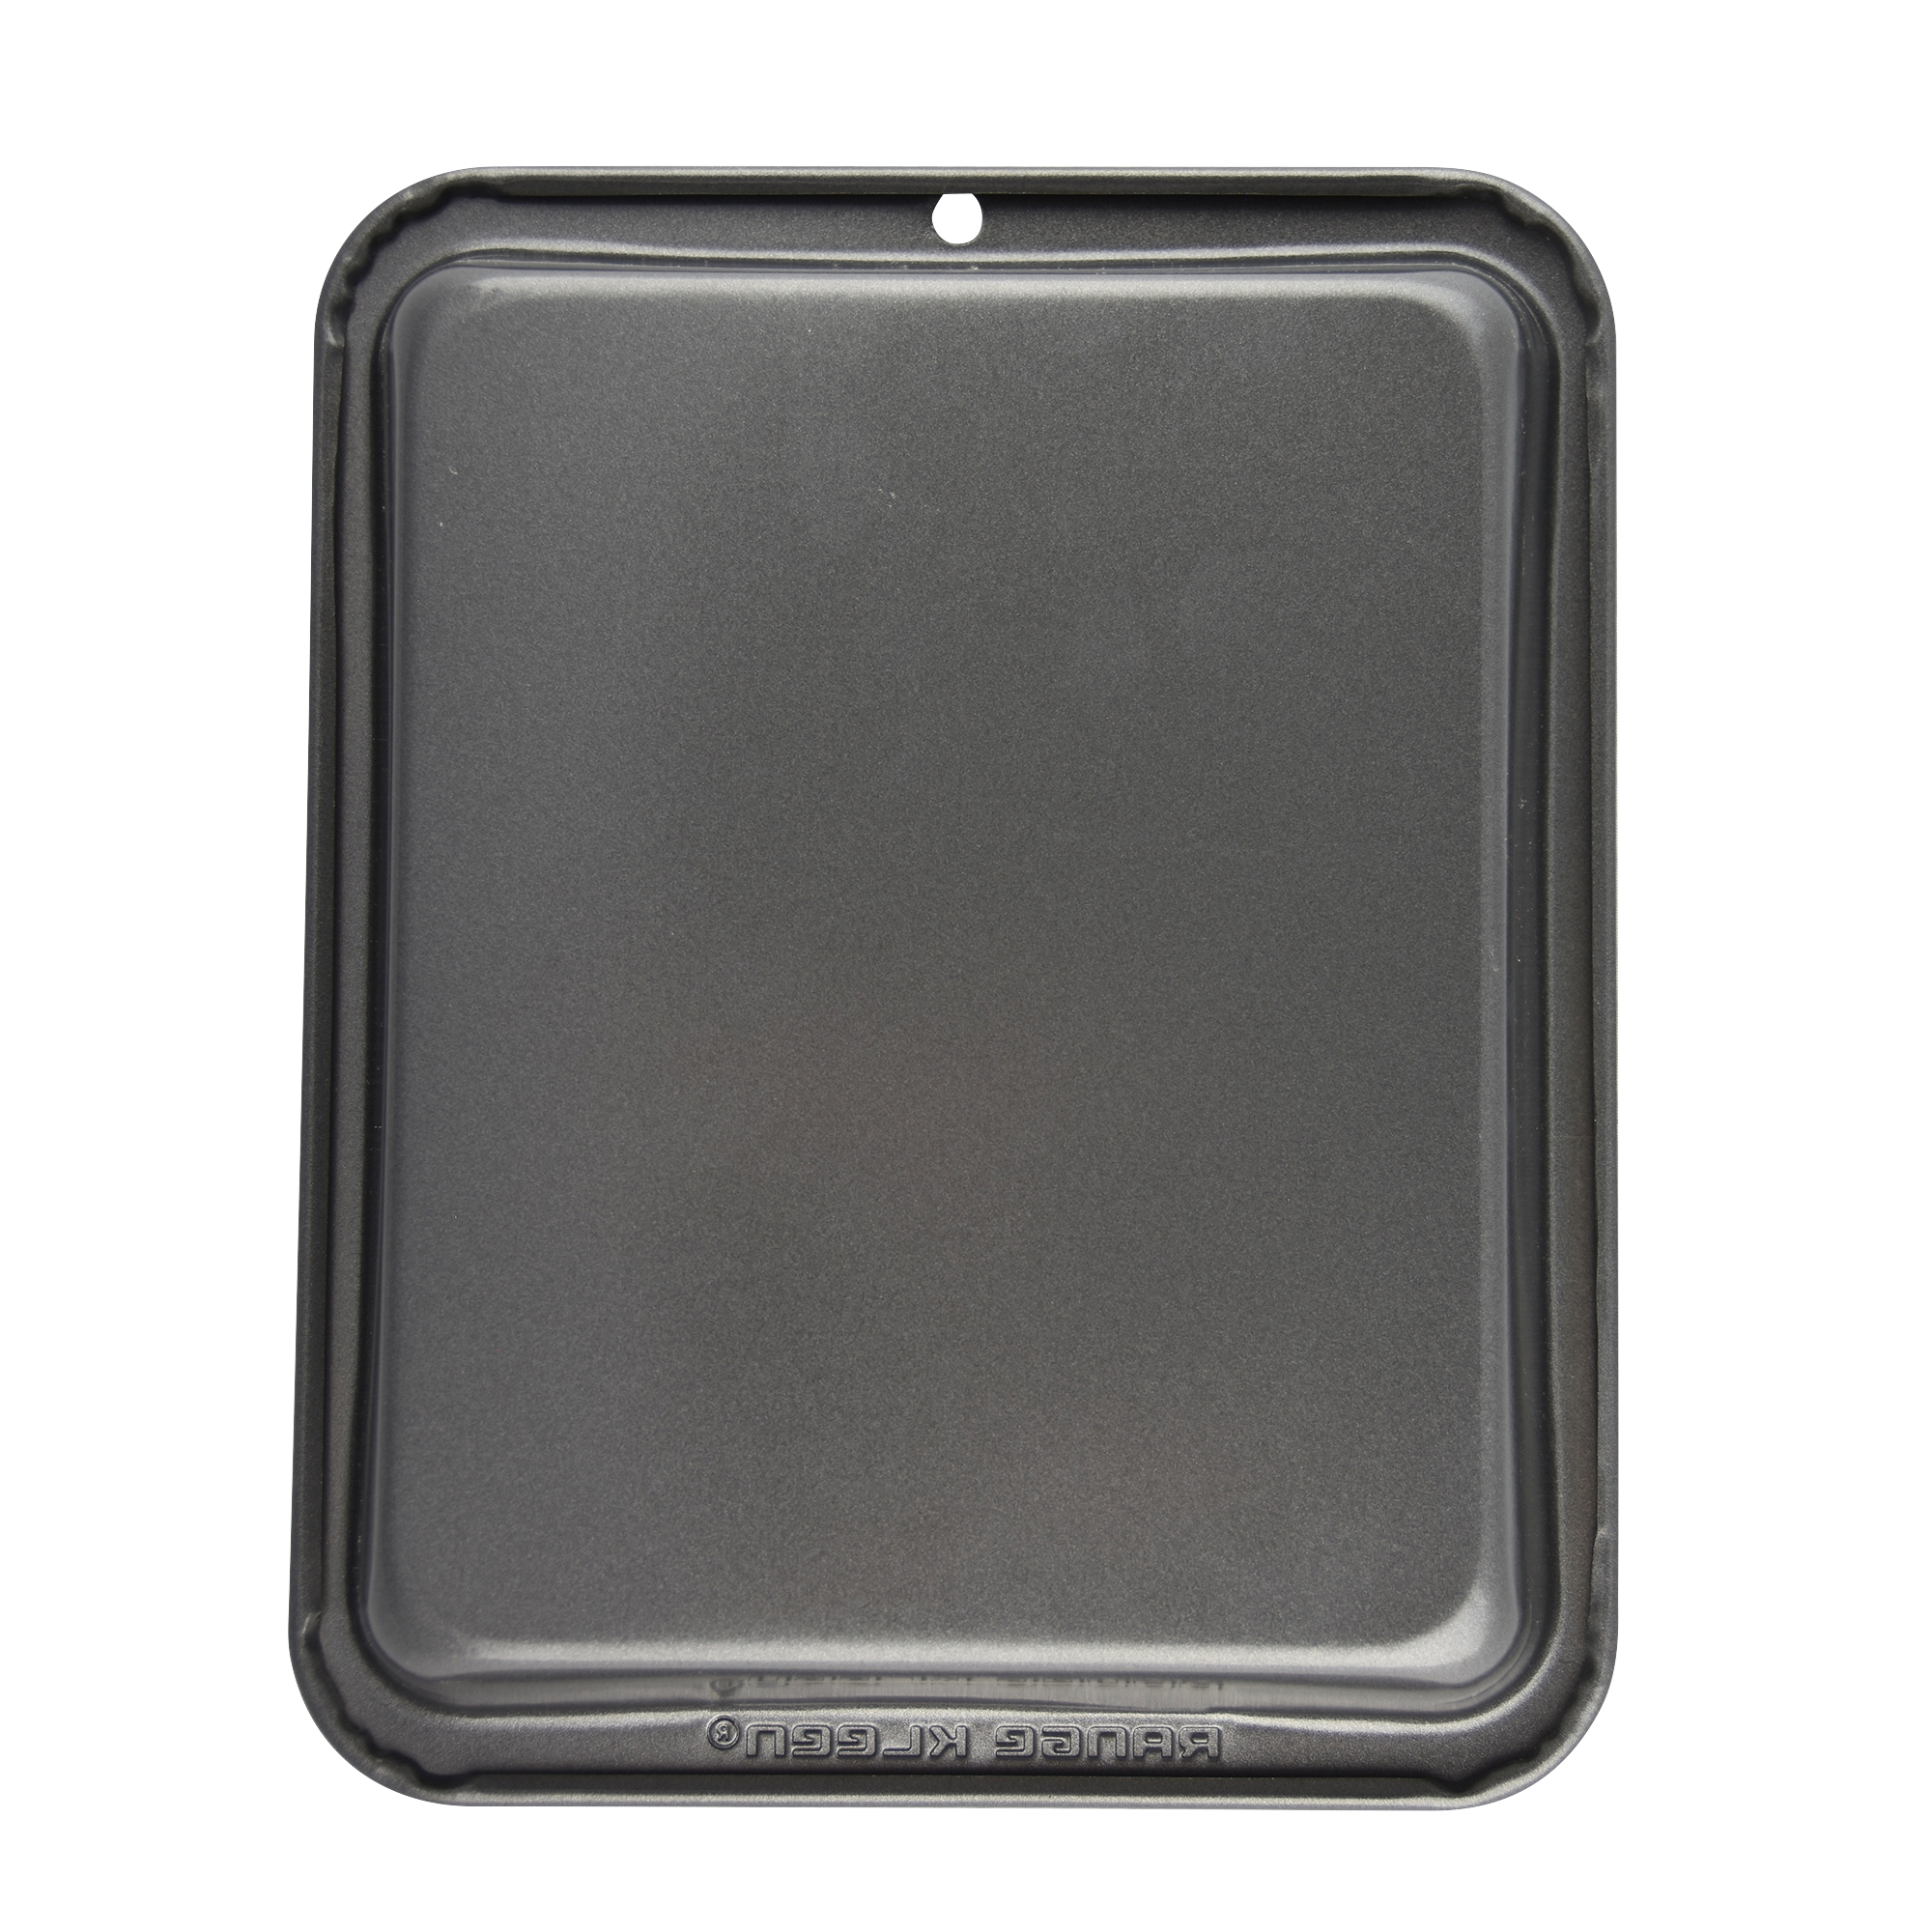 Range Kleen Non-Stick Petite Bakeware 8x10 inch Roasting Pan - image 2 of 5